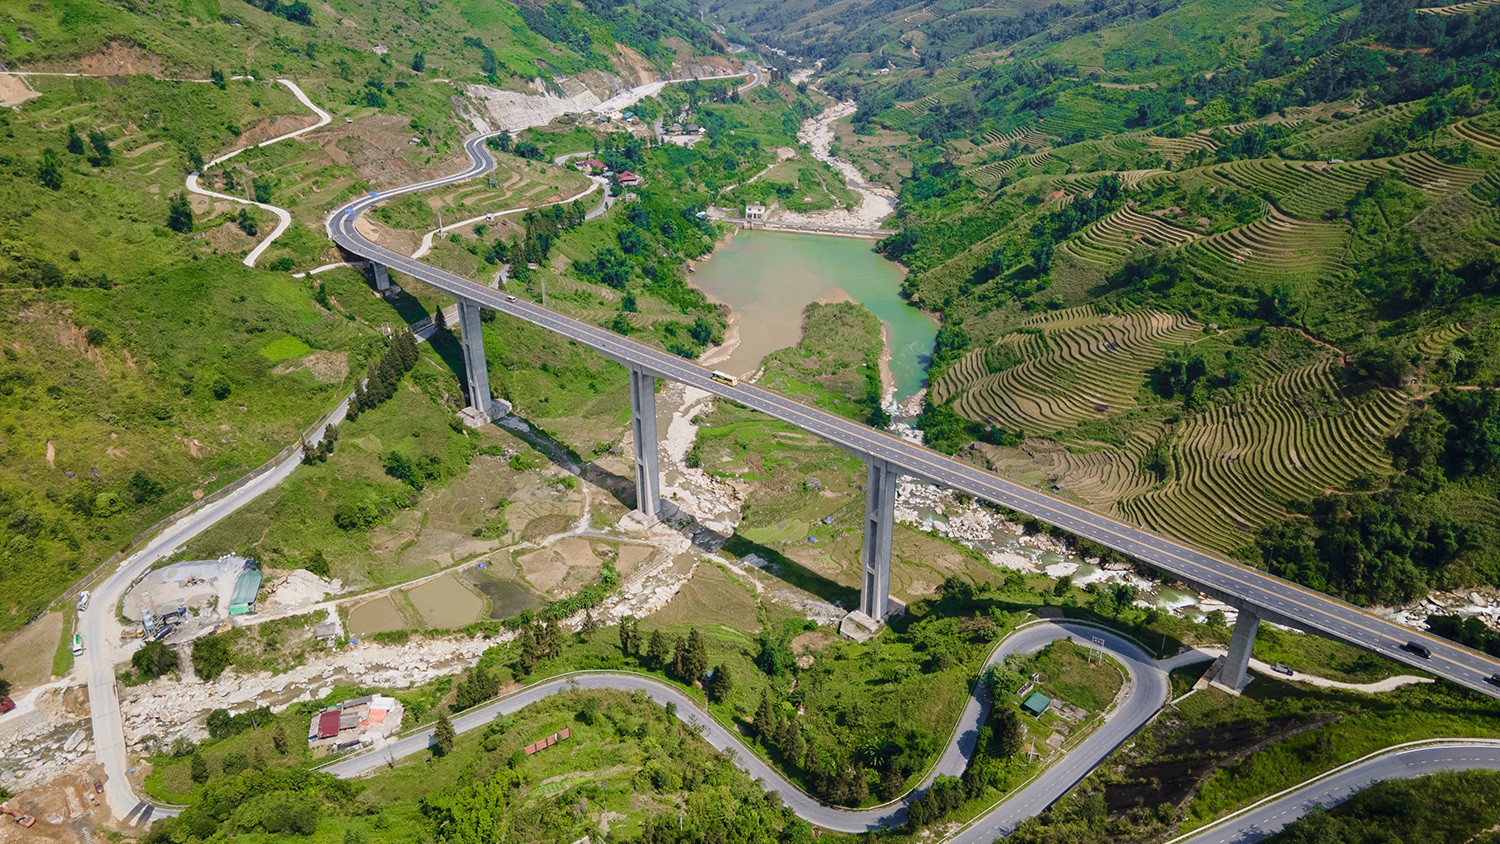 Cầu Móng Sến là cây cầu trên cạn (không bắc qua sông) thuộc dự án nối đường cao tốc Nội Bài - Lào Cai đi thị xã Sa Pa (tỉnh Lào Cai).